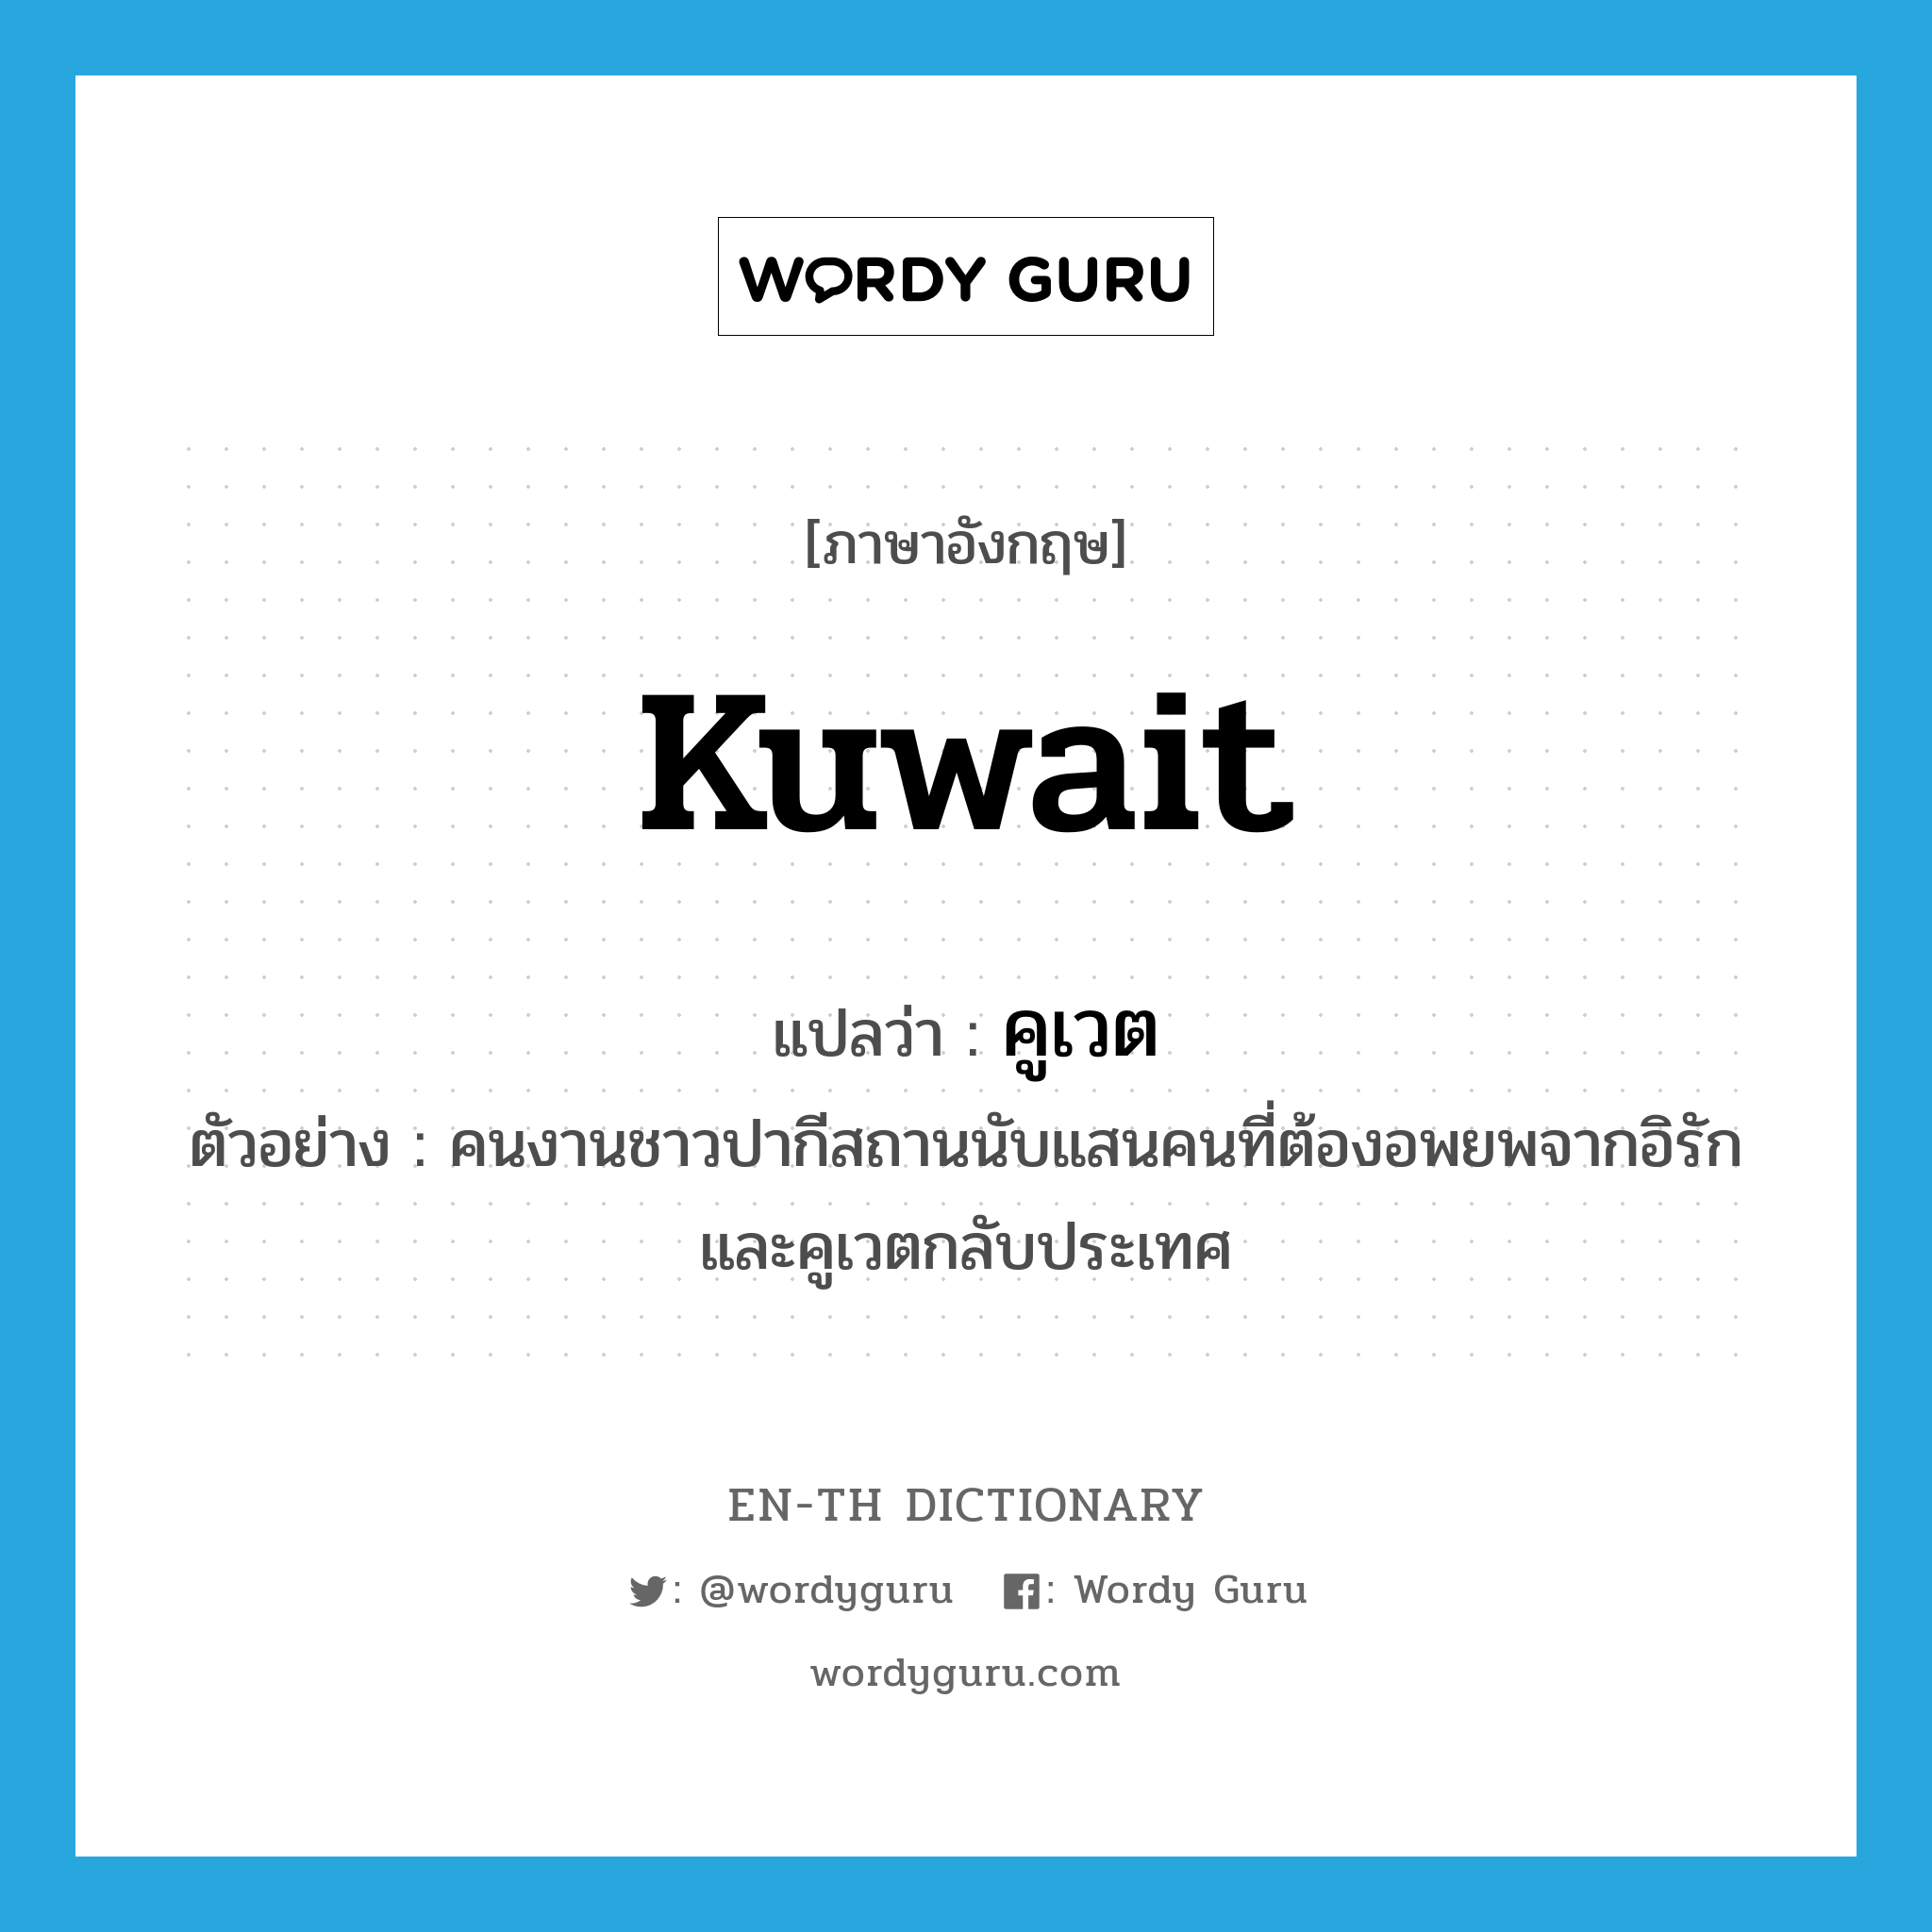 Kuwait แปลว่า?, คำศัพท์ภาษาอังกฤษ Kuwait แปลว่า คูเวต ประเภท N ตัวอย่าง คนงานชาวปากีสถานนับแสนคนที่ต้องอพยพจากอิรักและคูเวตกลับประเทศ หมวด N